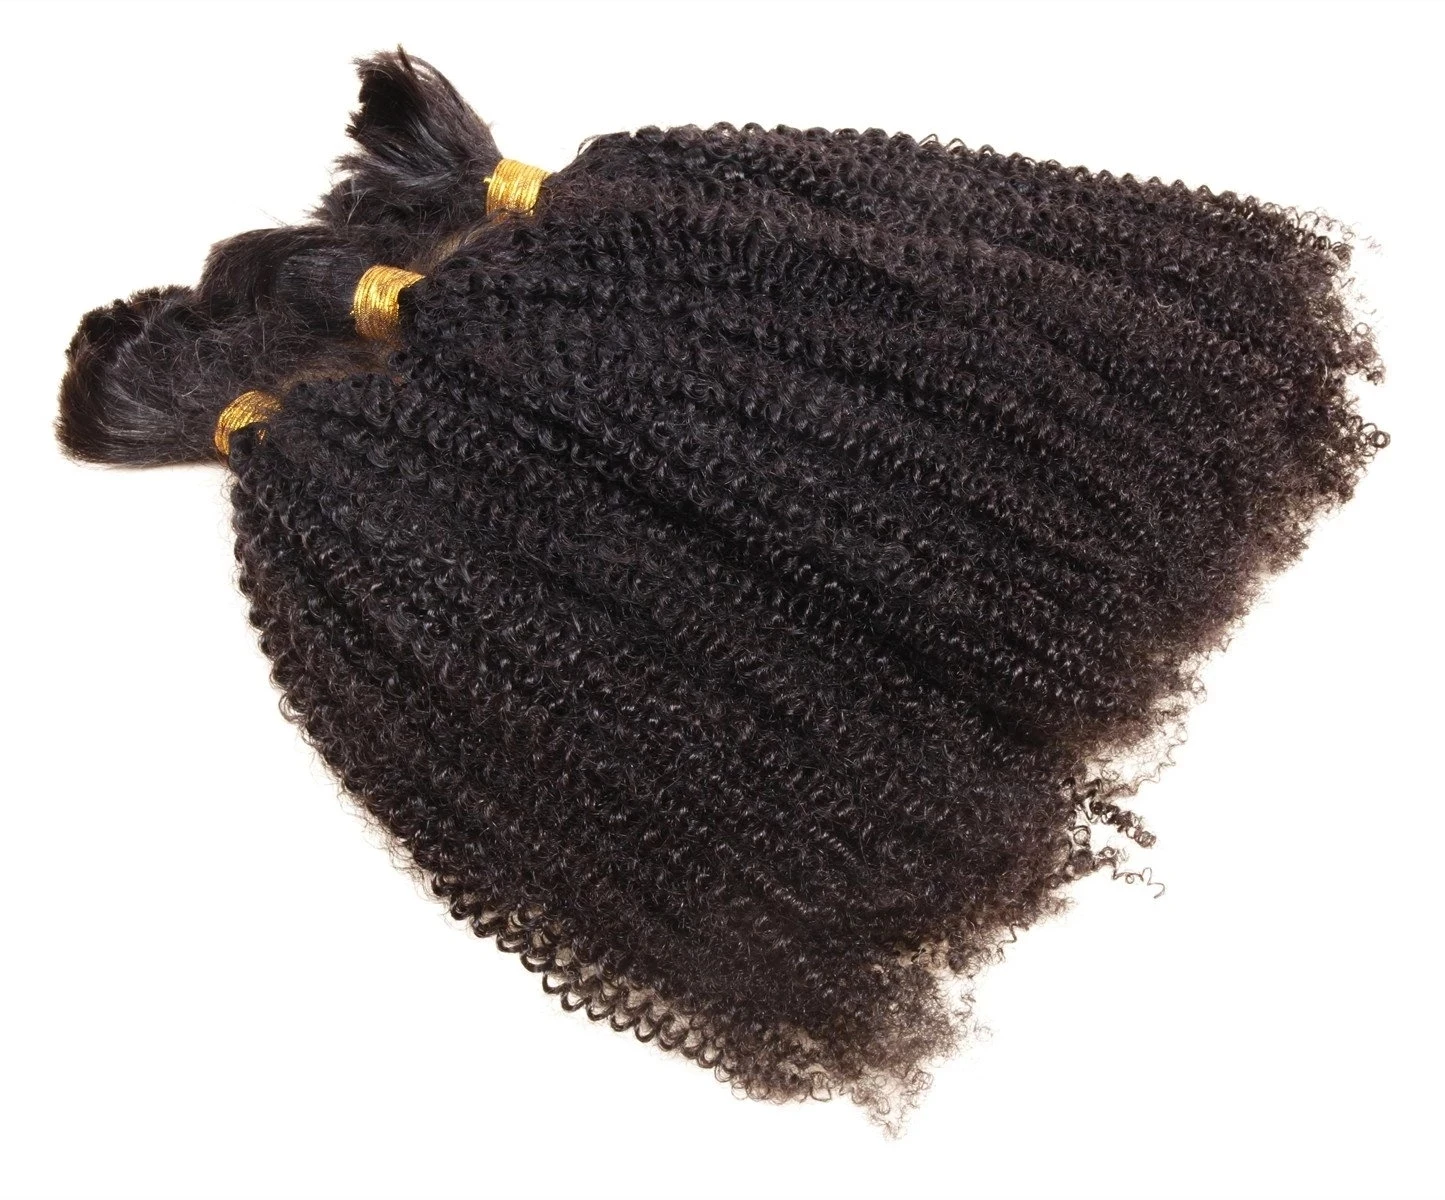 Perwersyjne kręcone ludzkie włosy wiązki rozszerzenia 100g mongolski Afro perwersyjne kręcone ludzkie włosy luzem do oplatania nie wątek dla czarnych kobiet